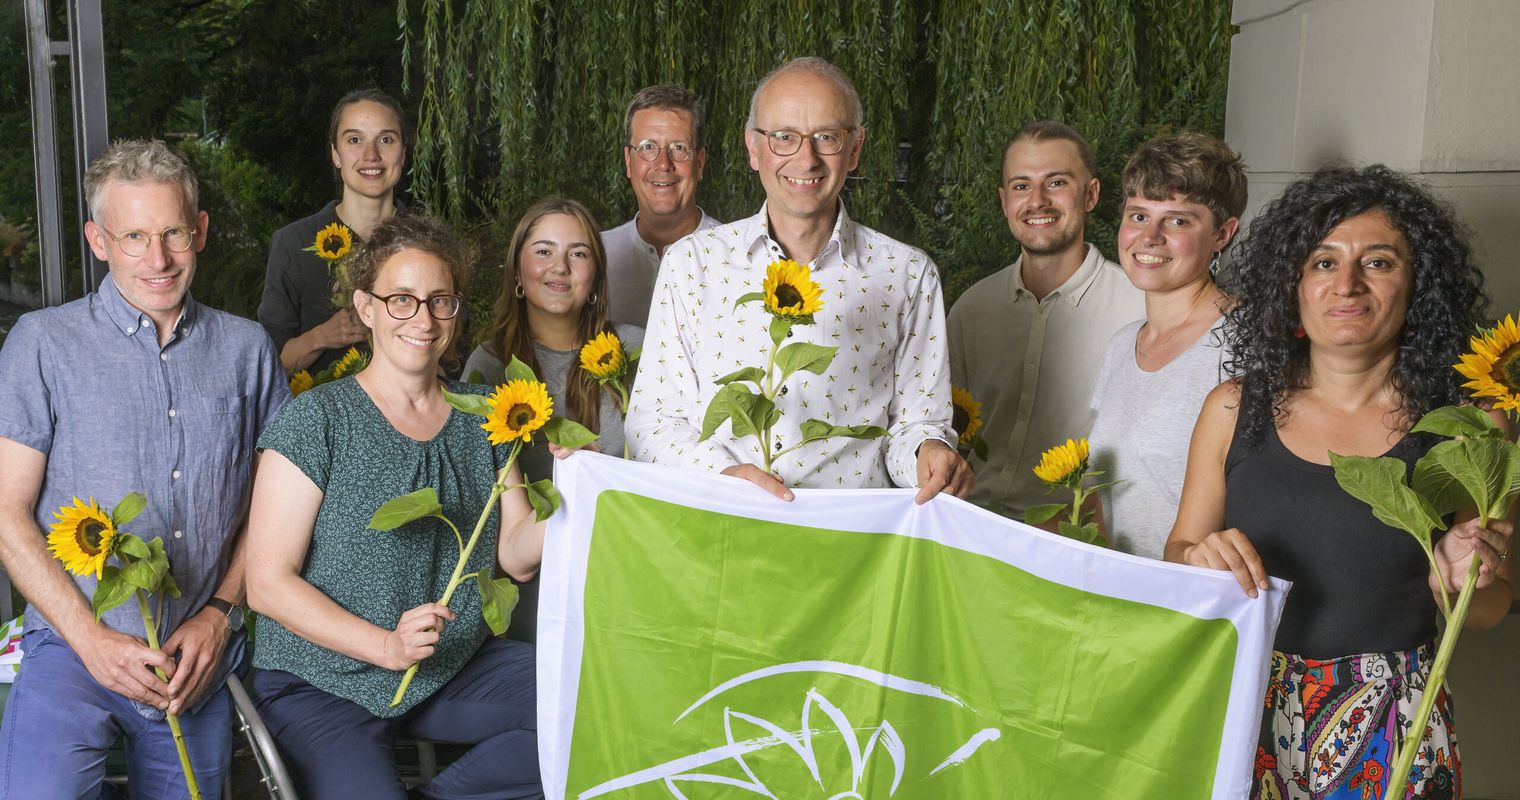 Die Grünen des Kantons Luzern treten mit drei Listen an